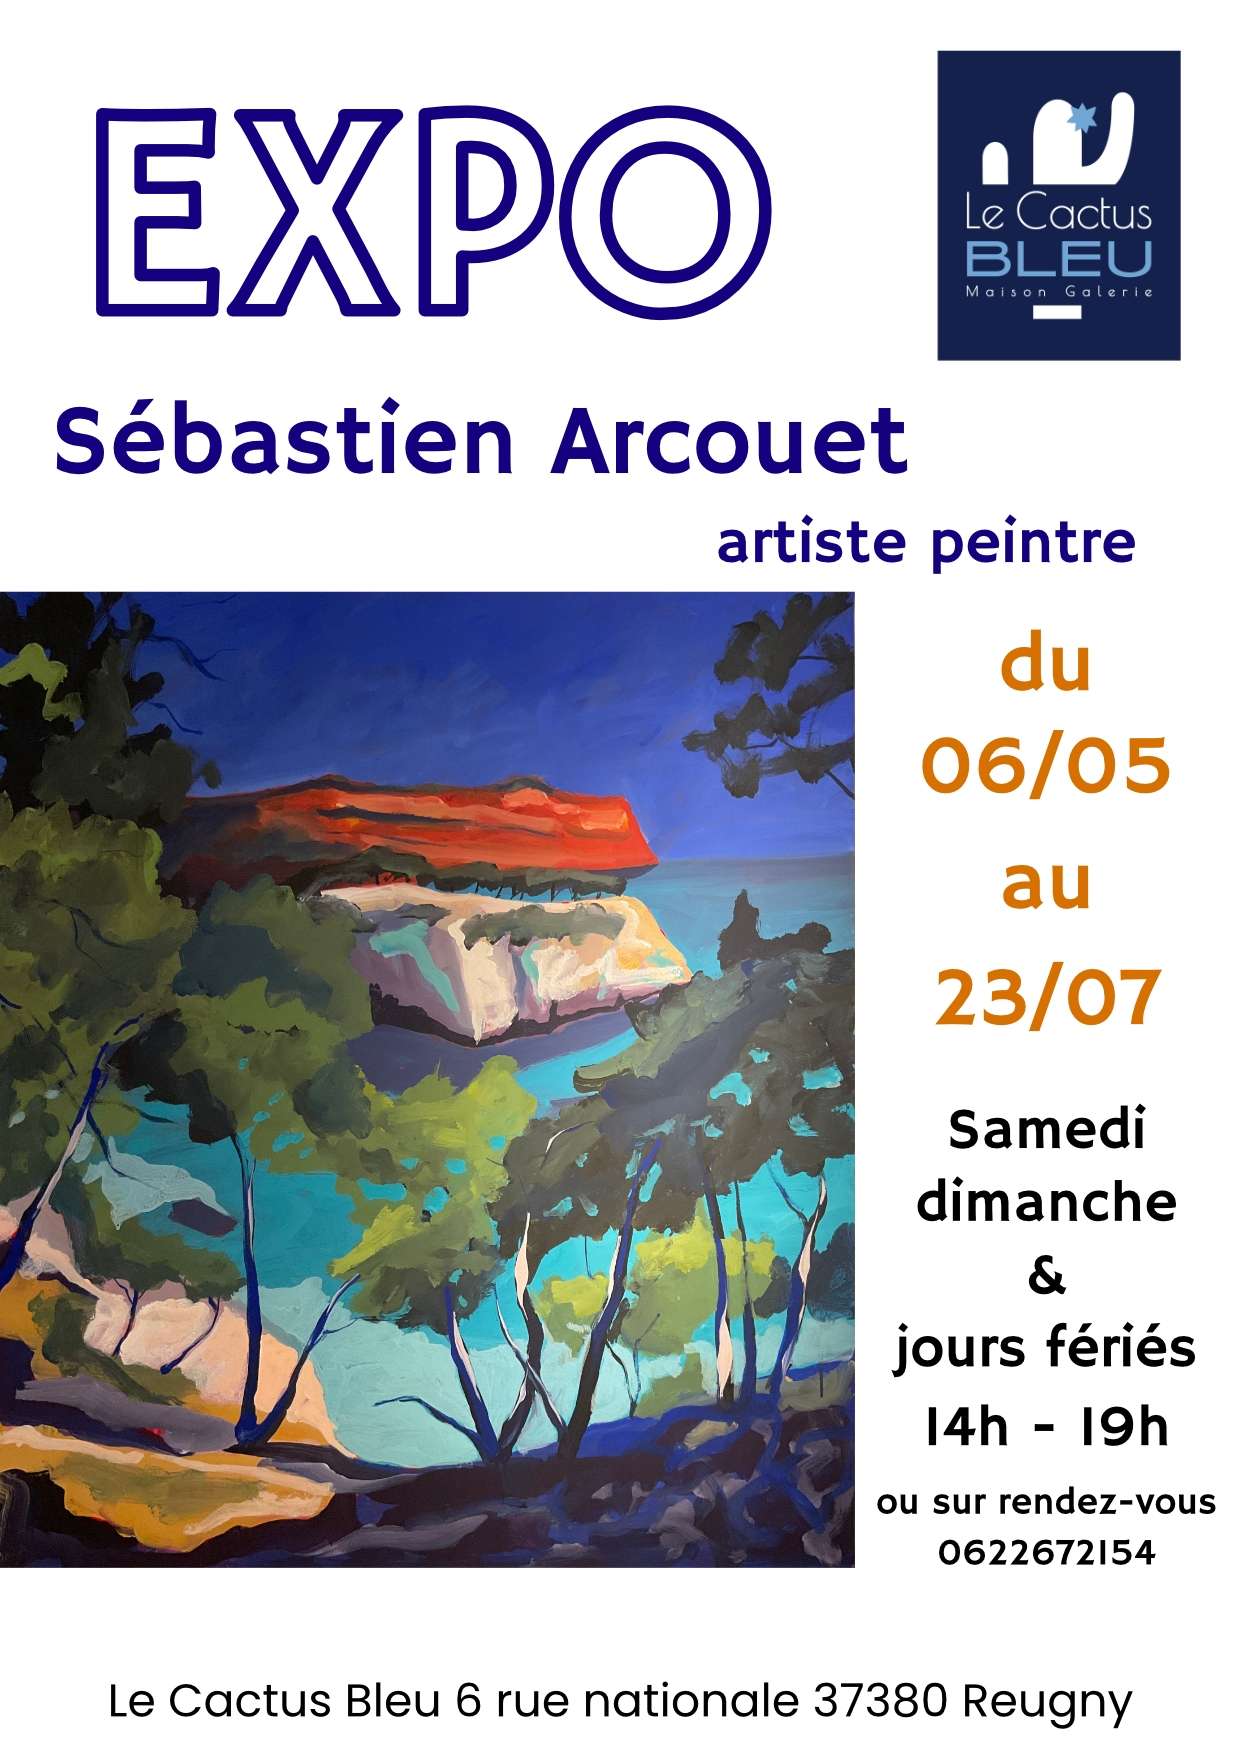 L'artiste peintre Sebastien Arcouet expose au CACTUS BLEU jusqu'au 23 juillet